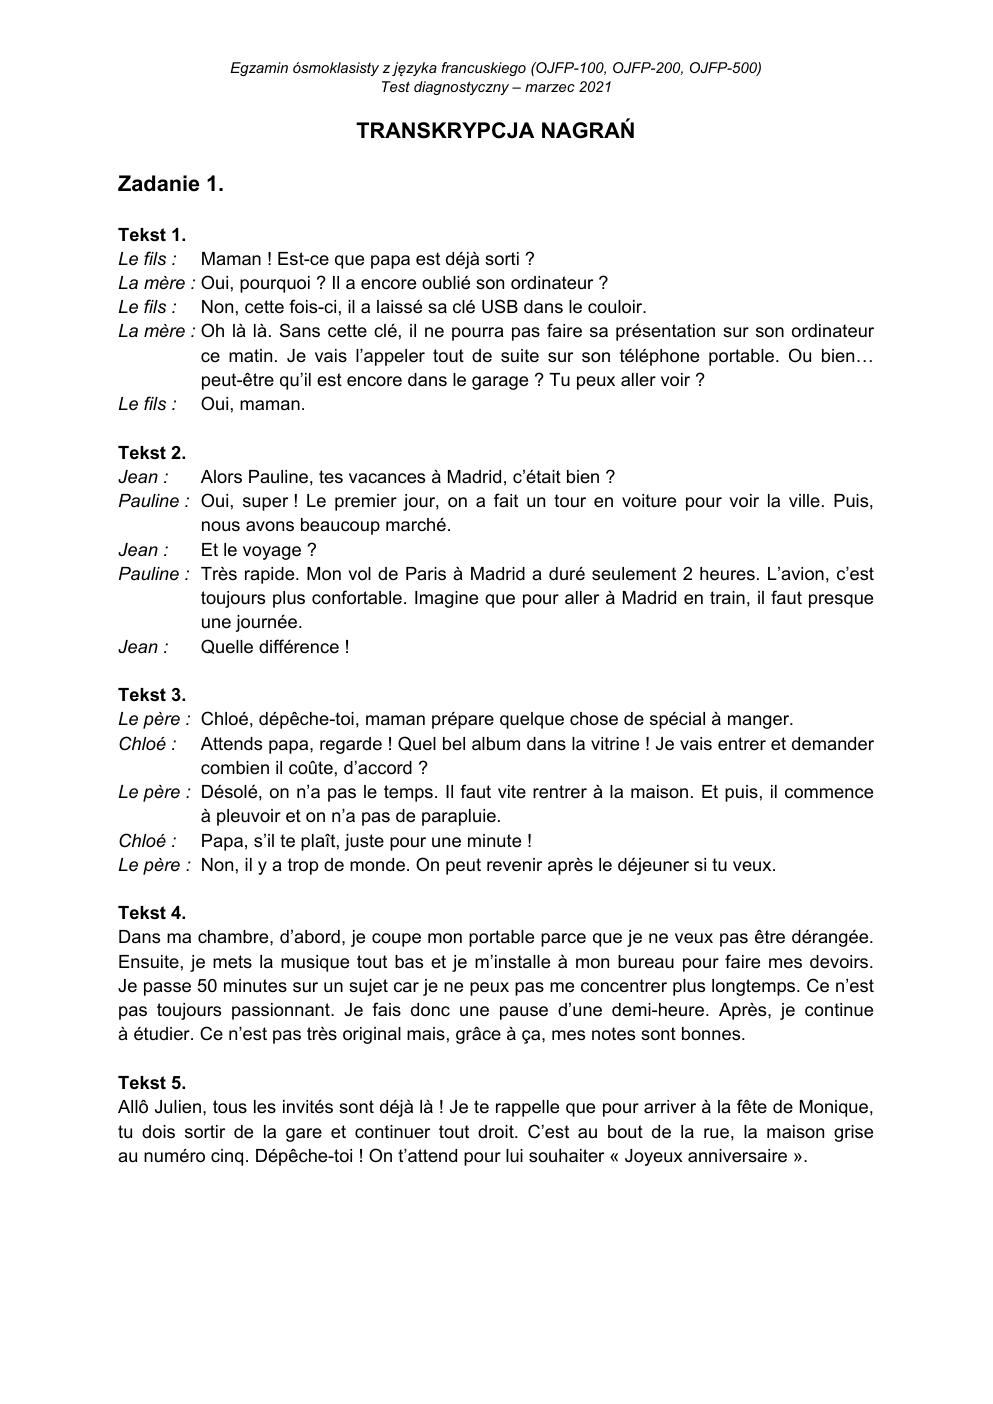 transkrypcja - francuski - egzamin ósmoklasisty 2021 próbny-1